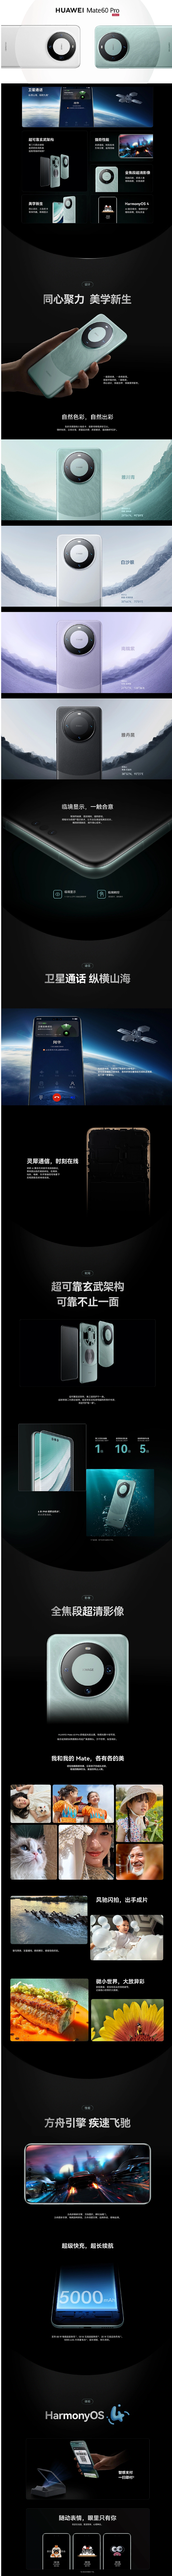 更新链接：华为 Mate60 Pro 手机今日 18:08 上架京东预售 - 3